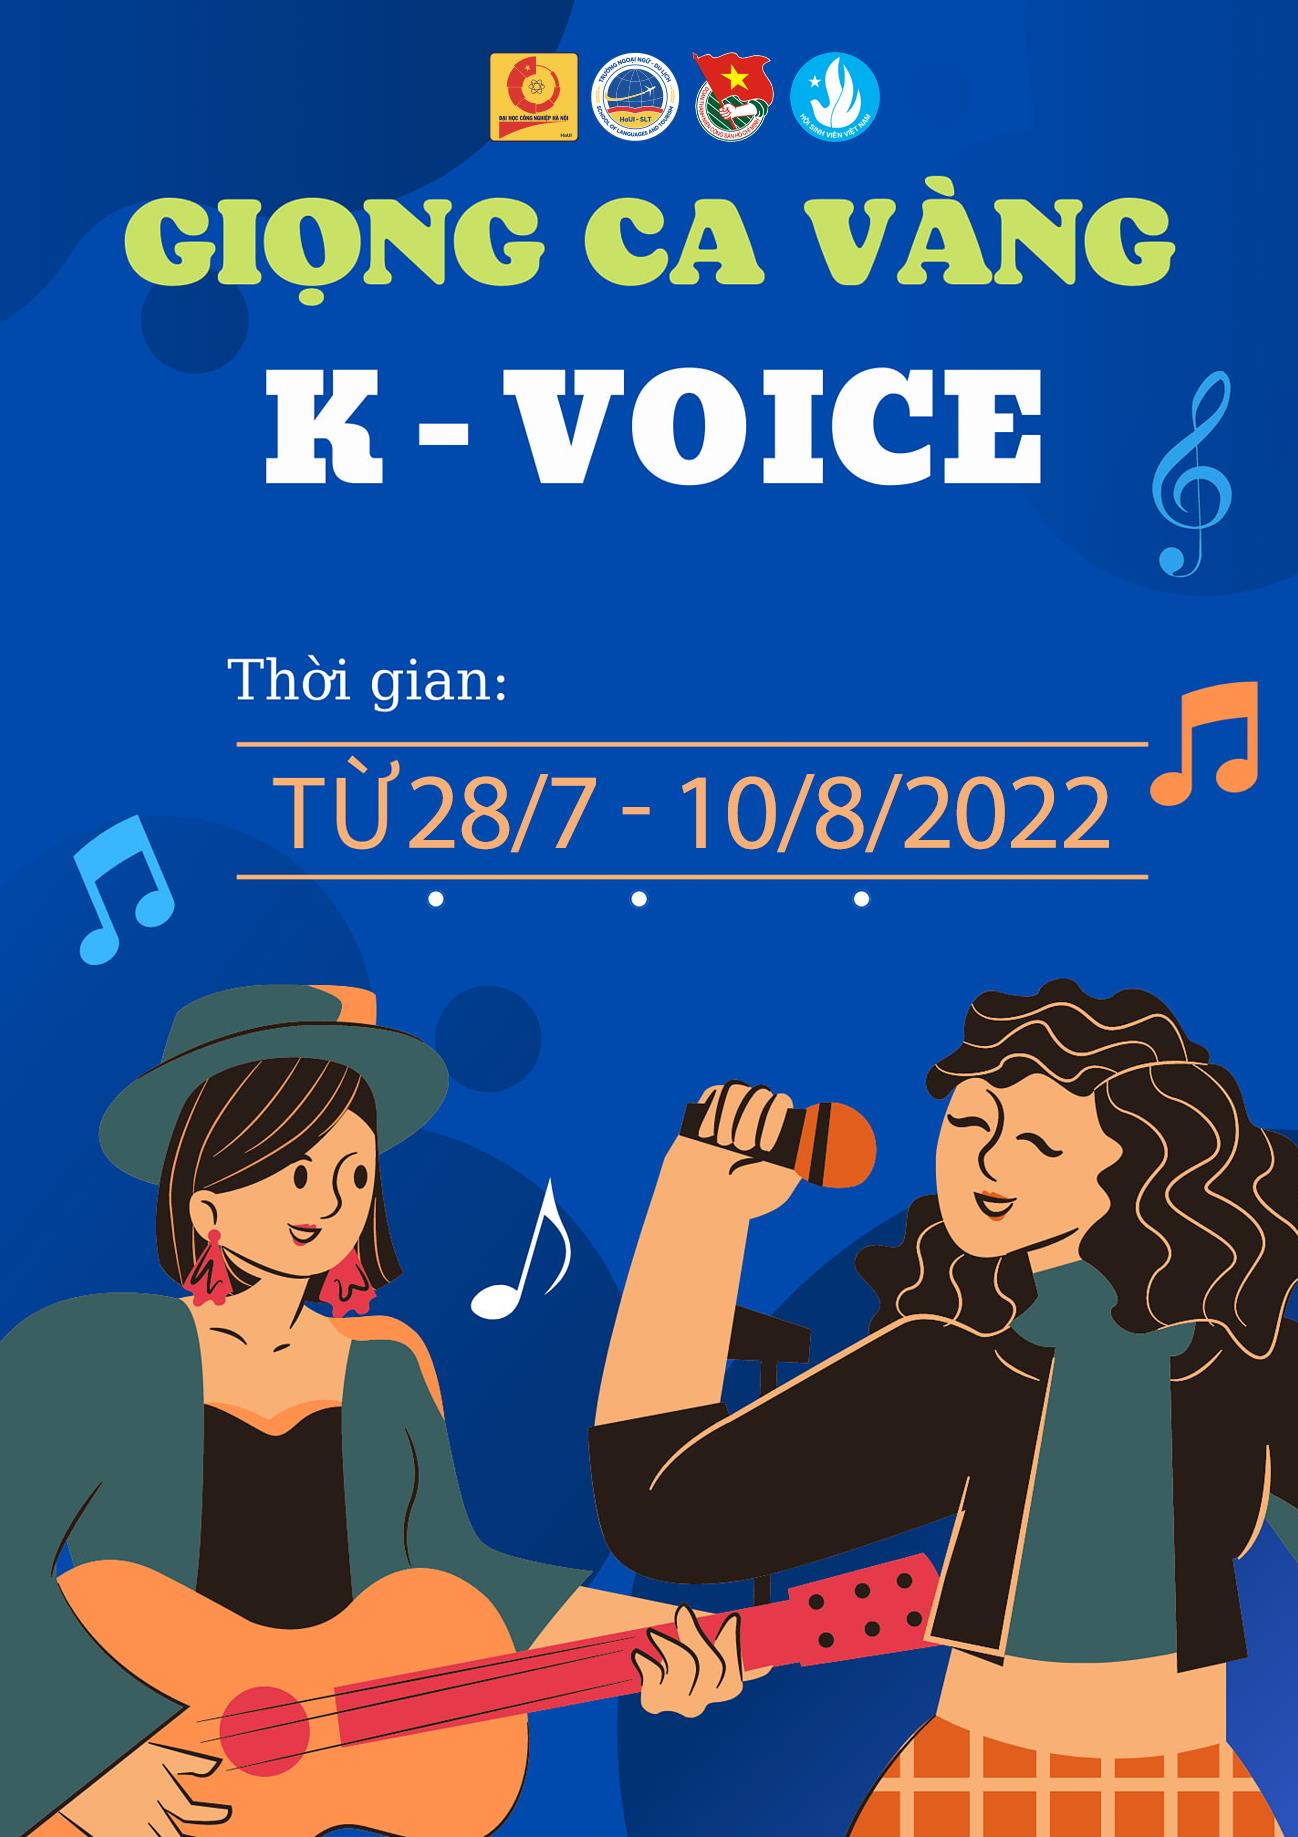 Cuộc thi giọng ca vàng K-VOICE